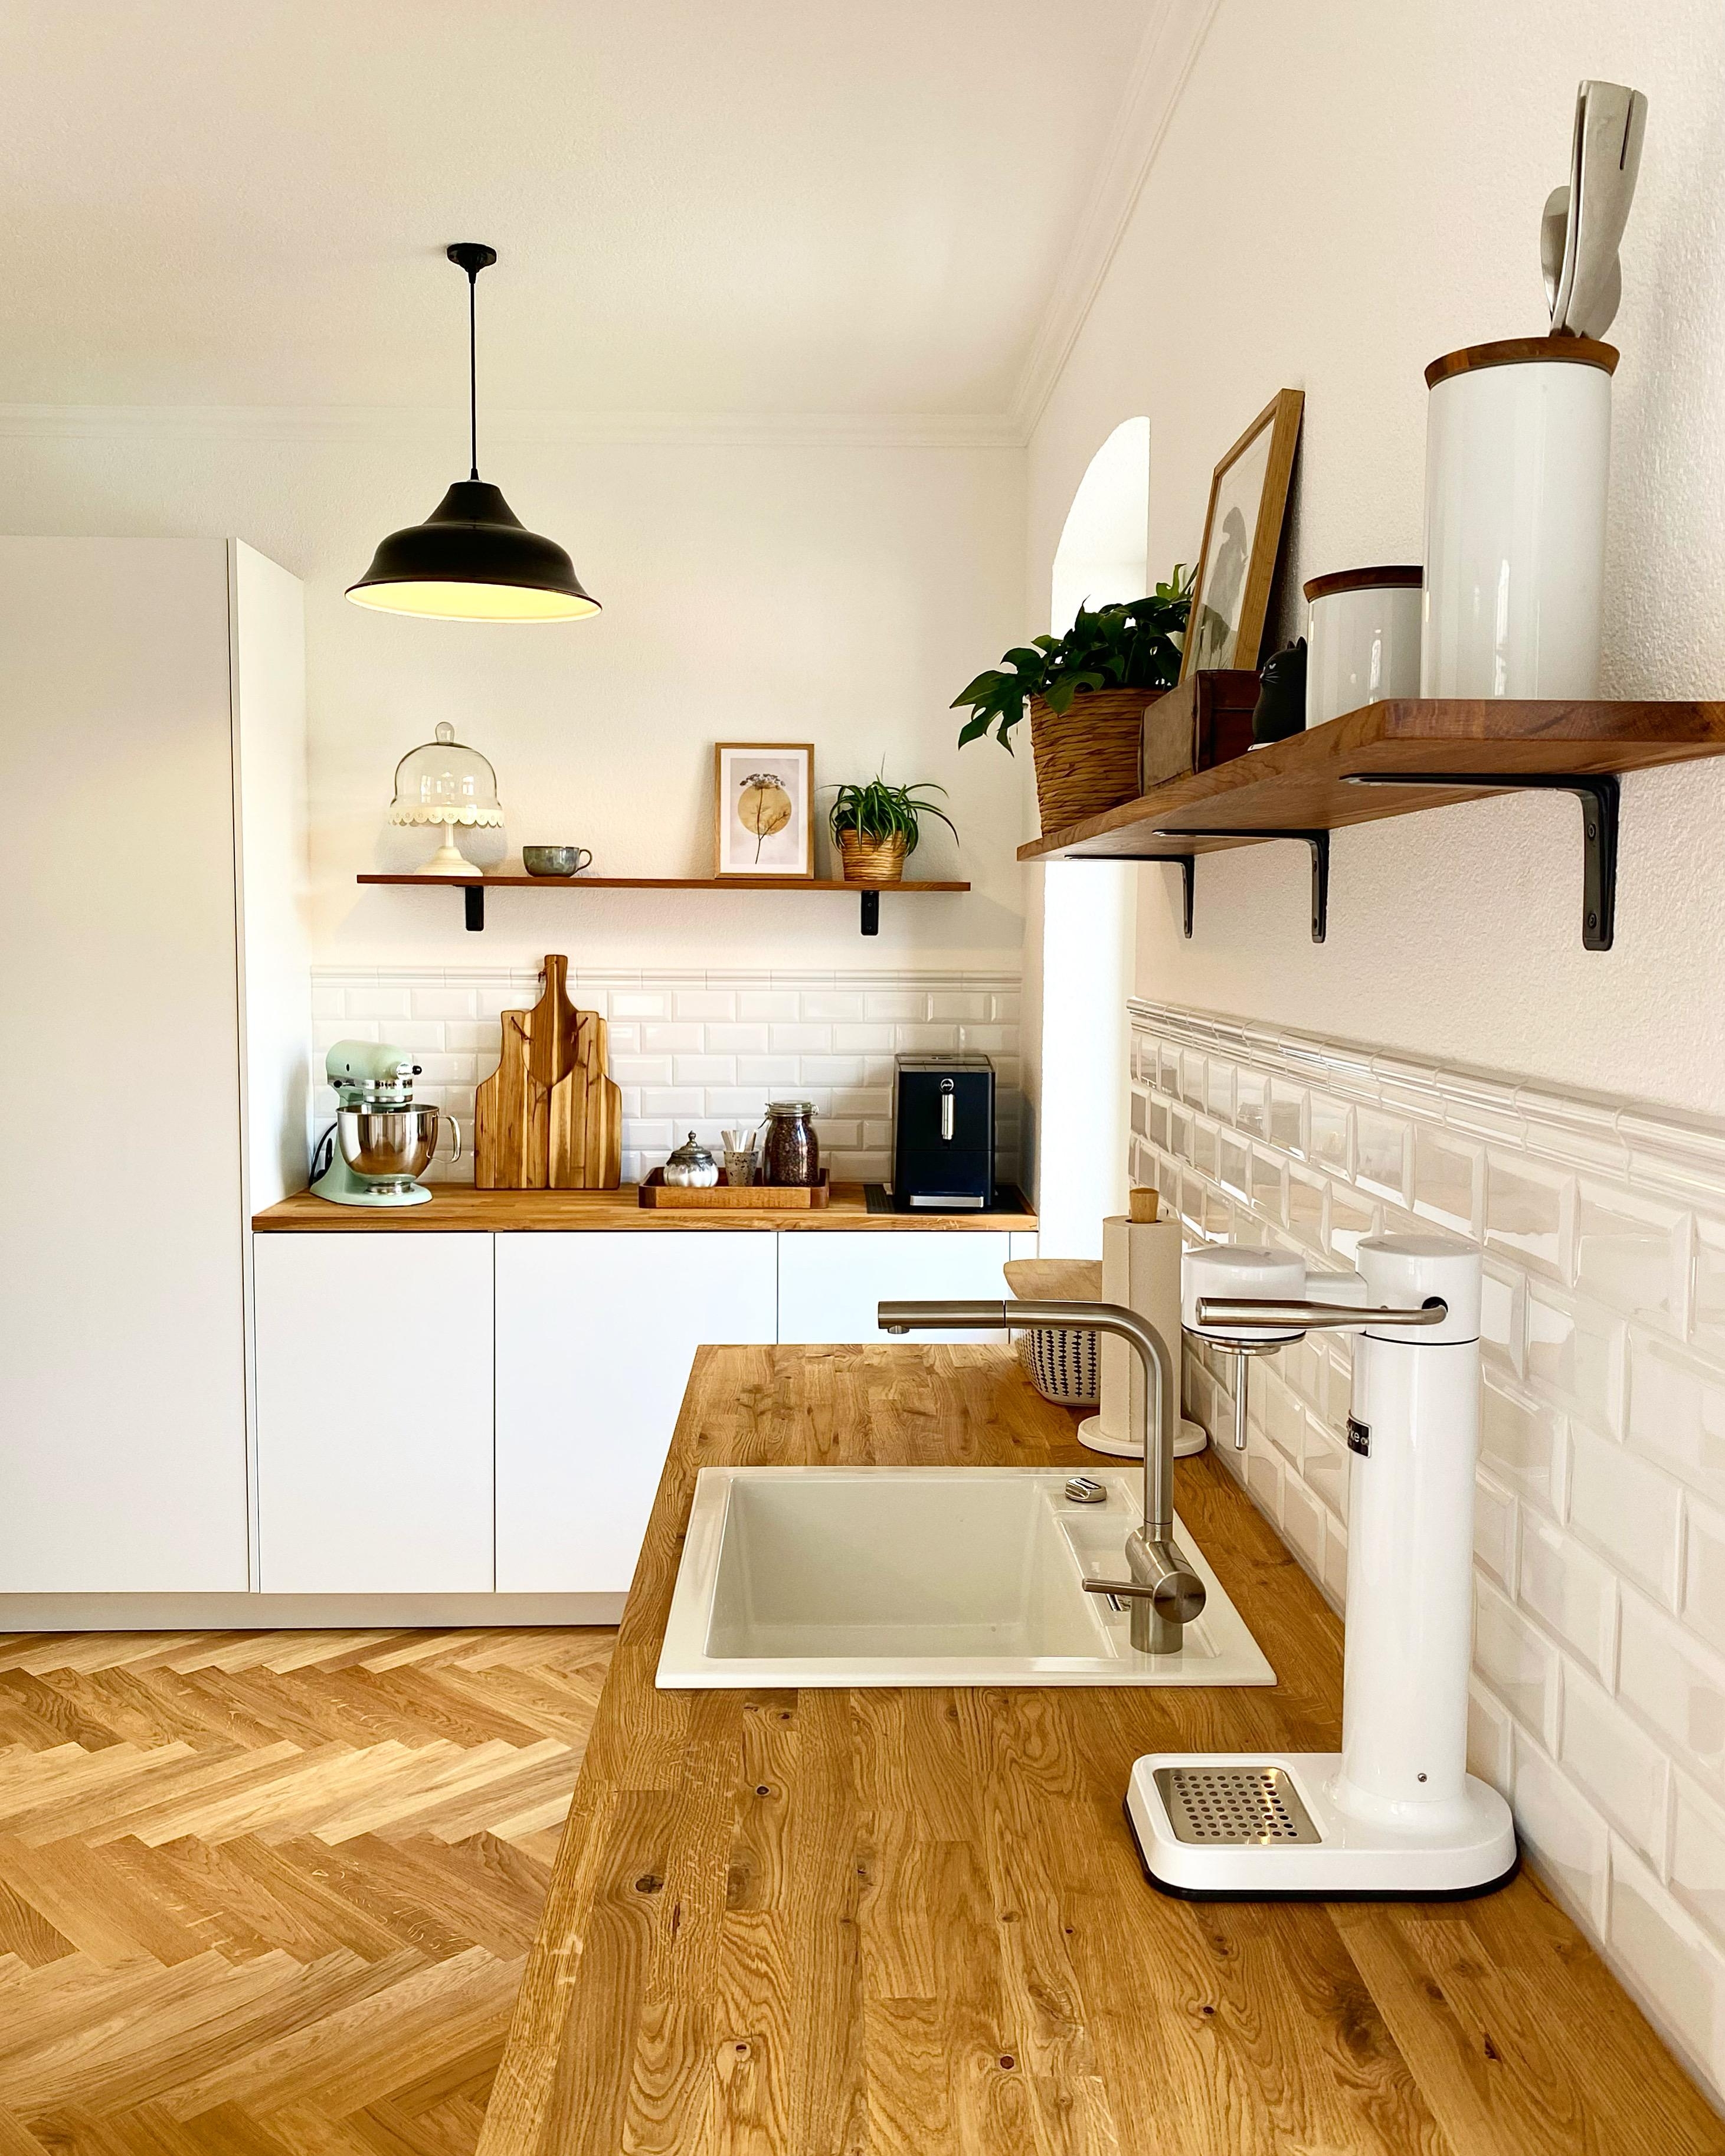 #küche #kitchen #einrichten #interior #altbausanierung #living 